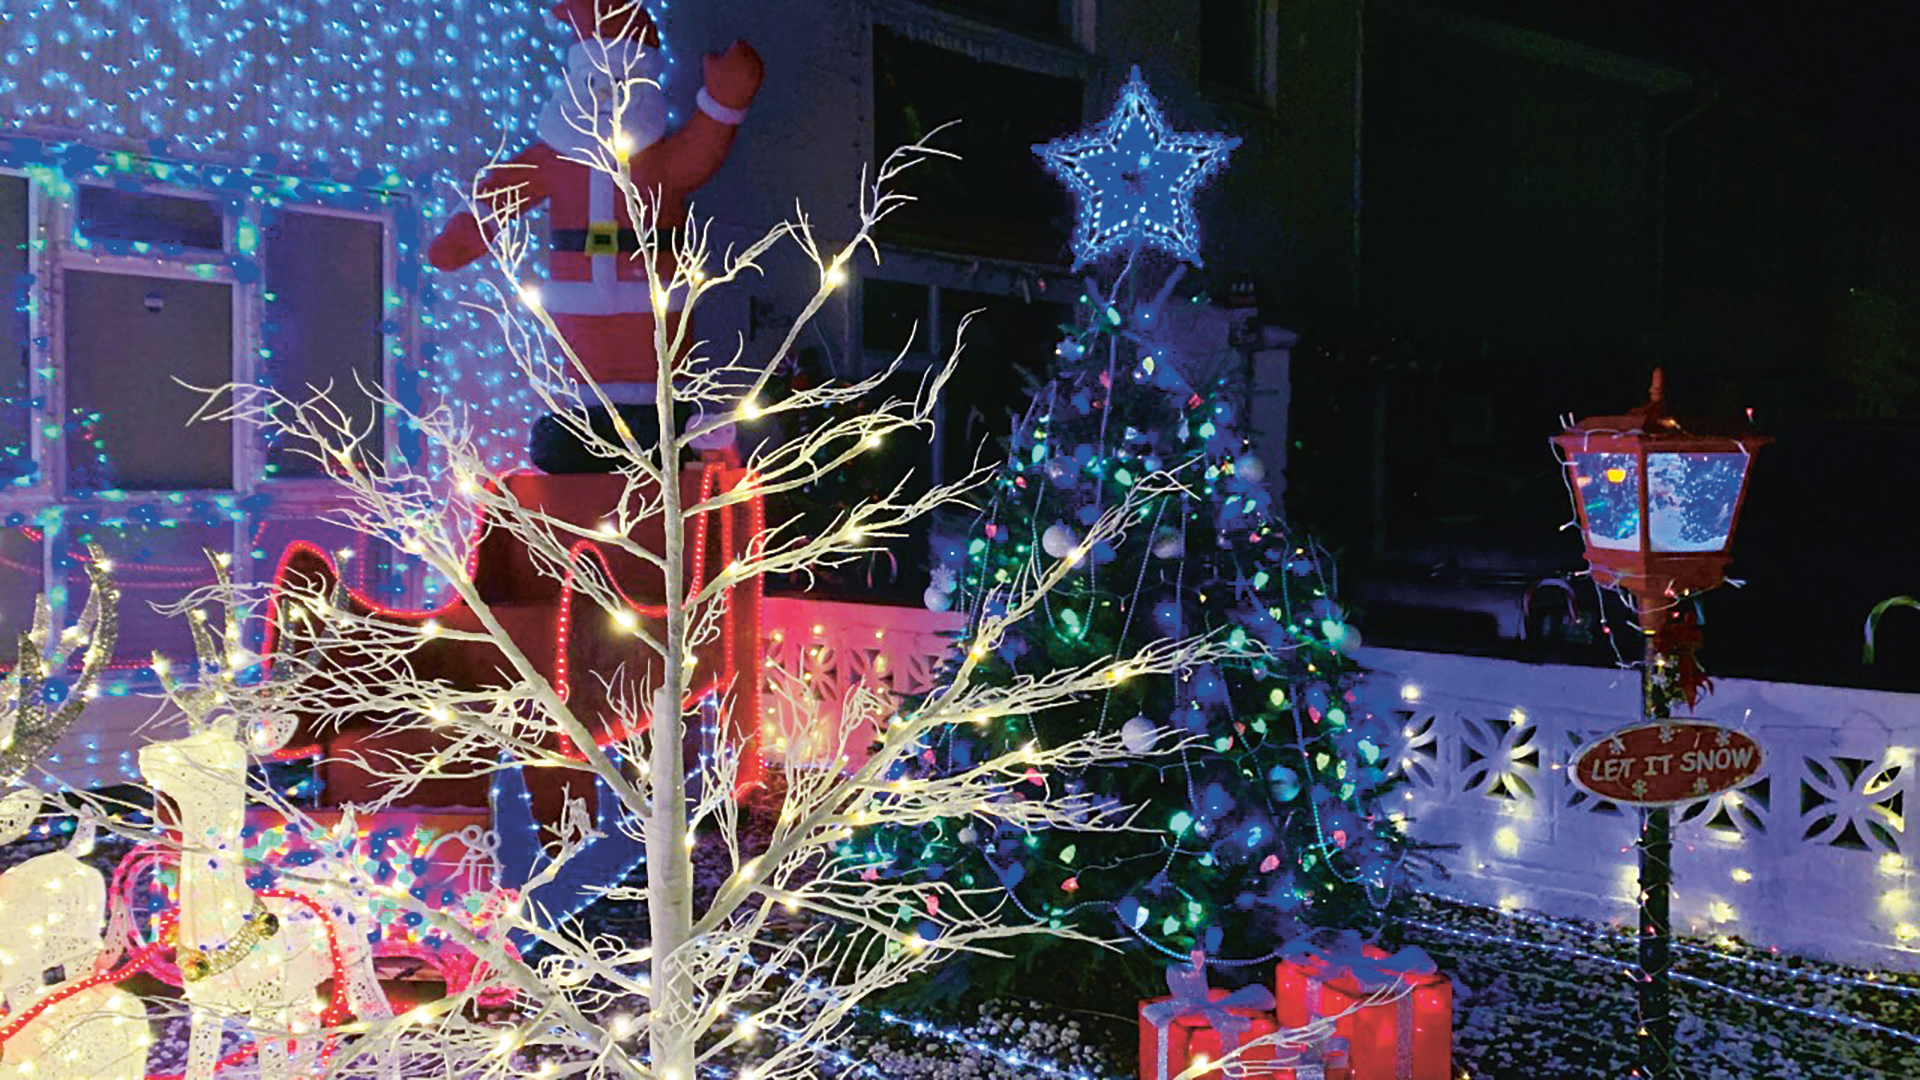 Mark Abbott's Christmas lights